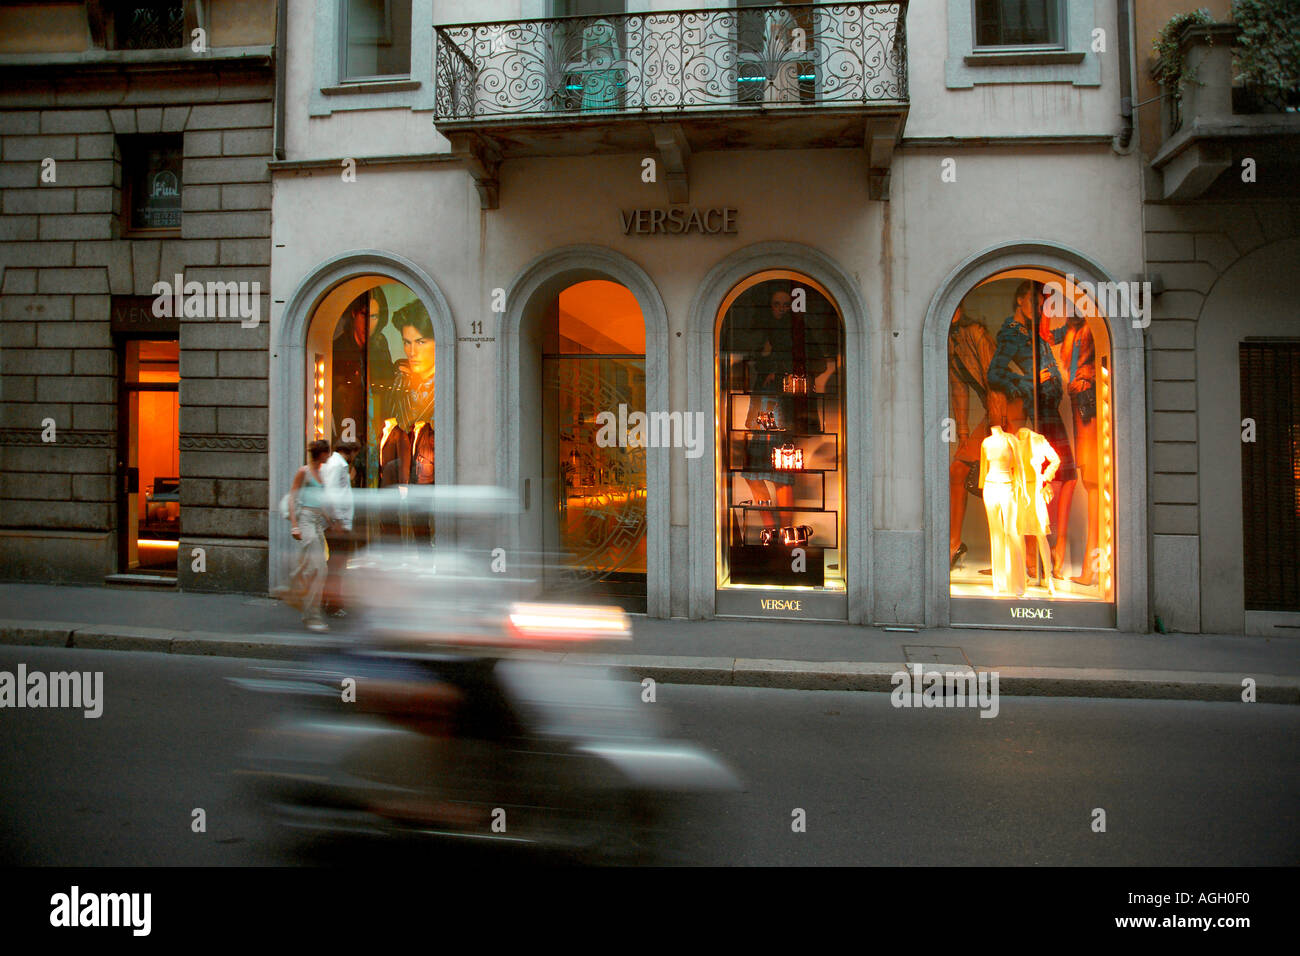 Via Monte Napoleone, Quadrilatero Fashion Area, Milan, Italy Stock Photo